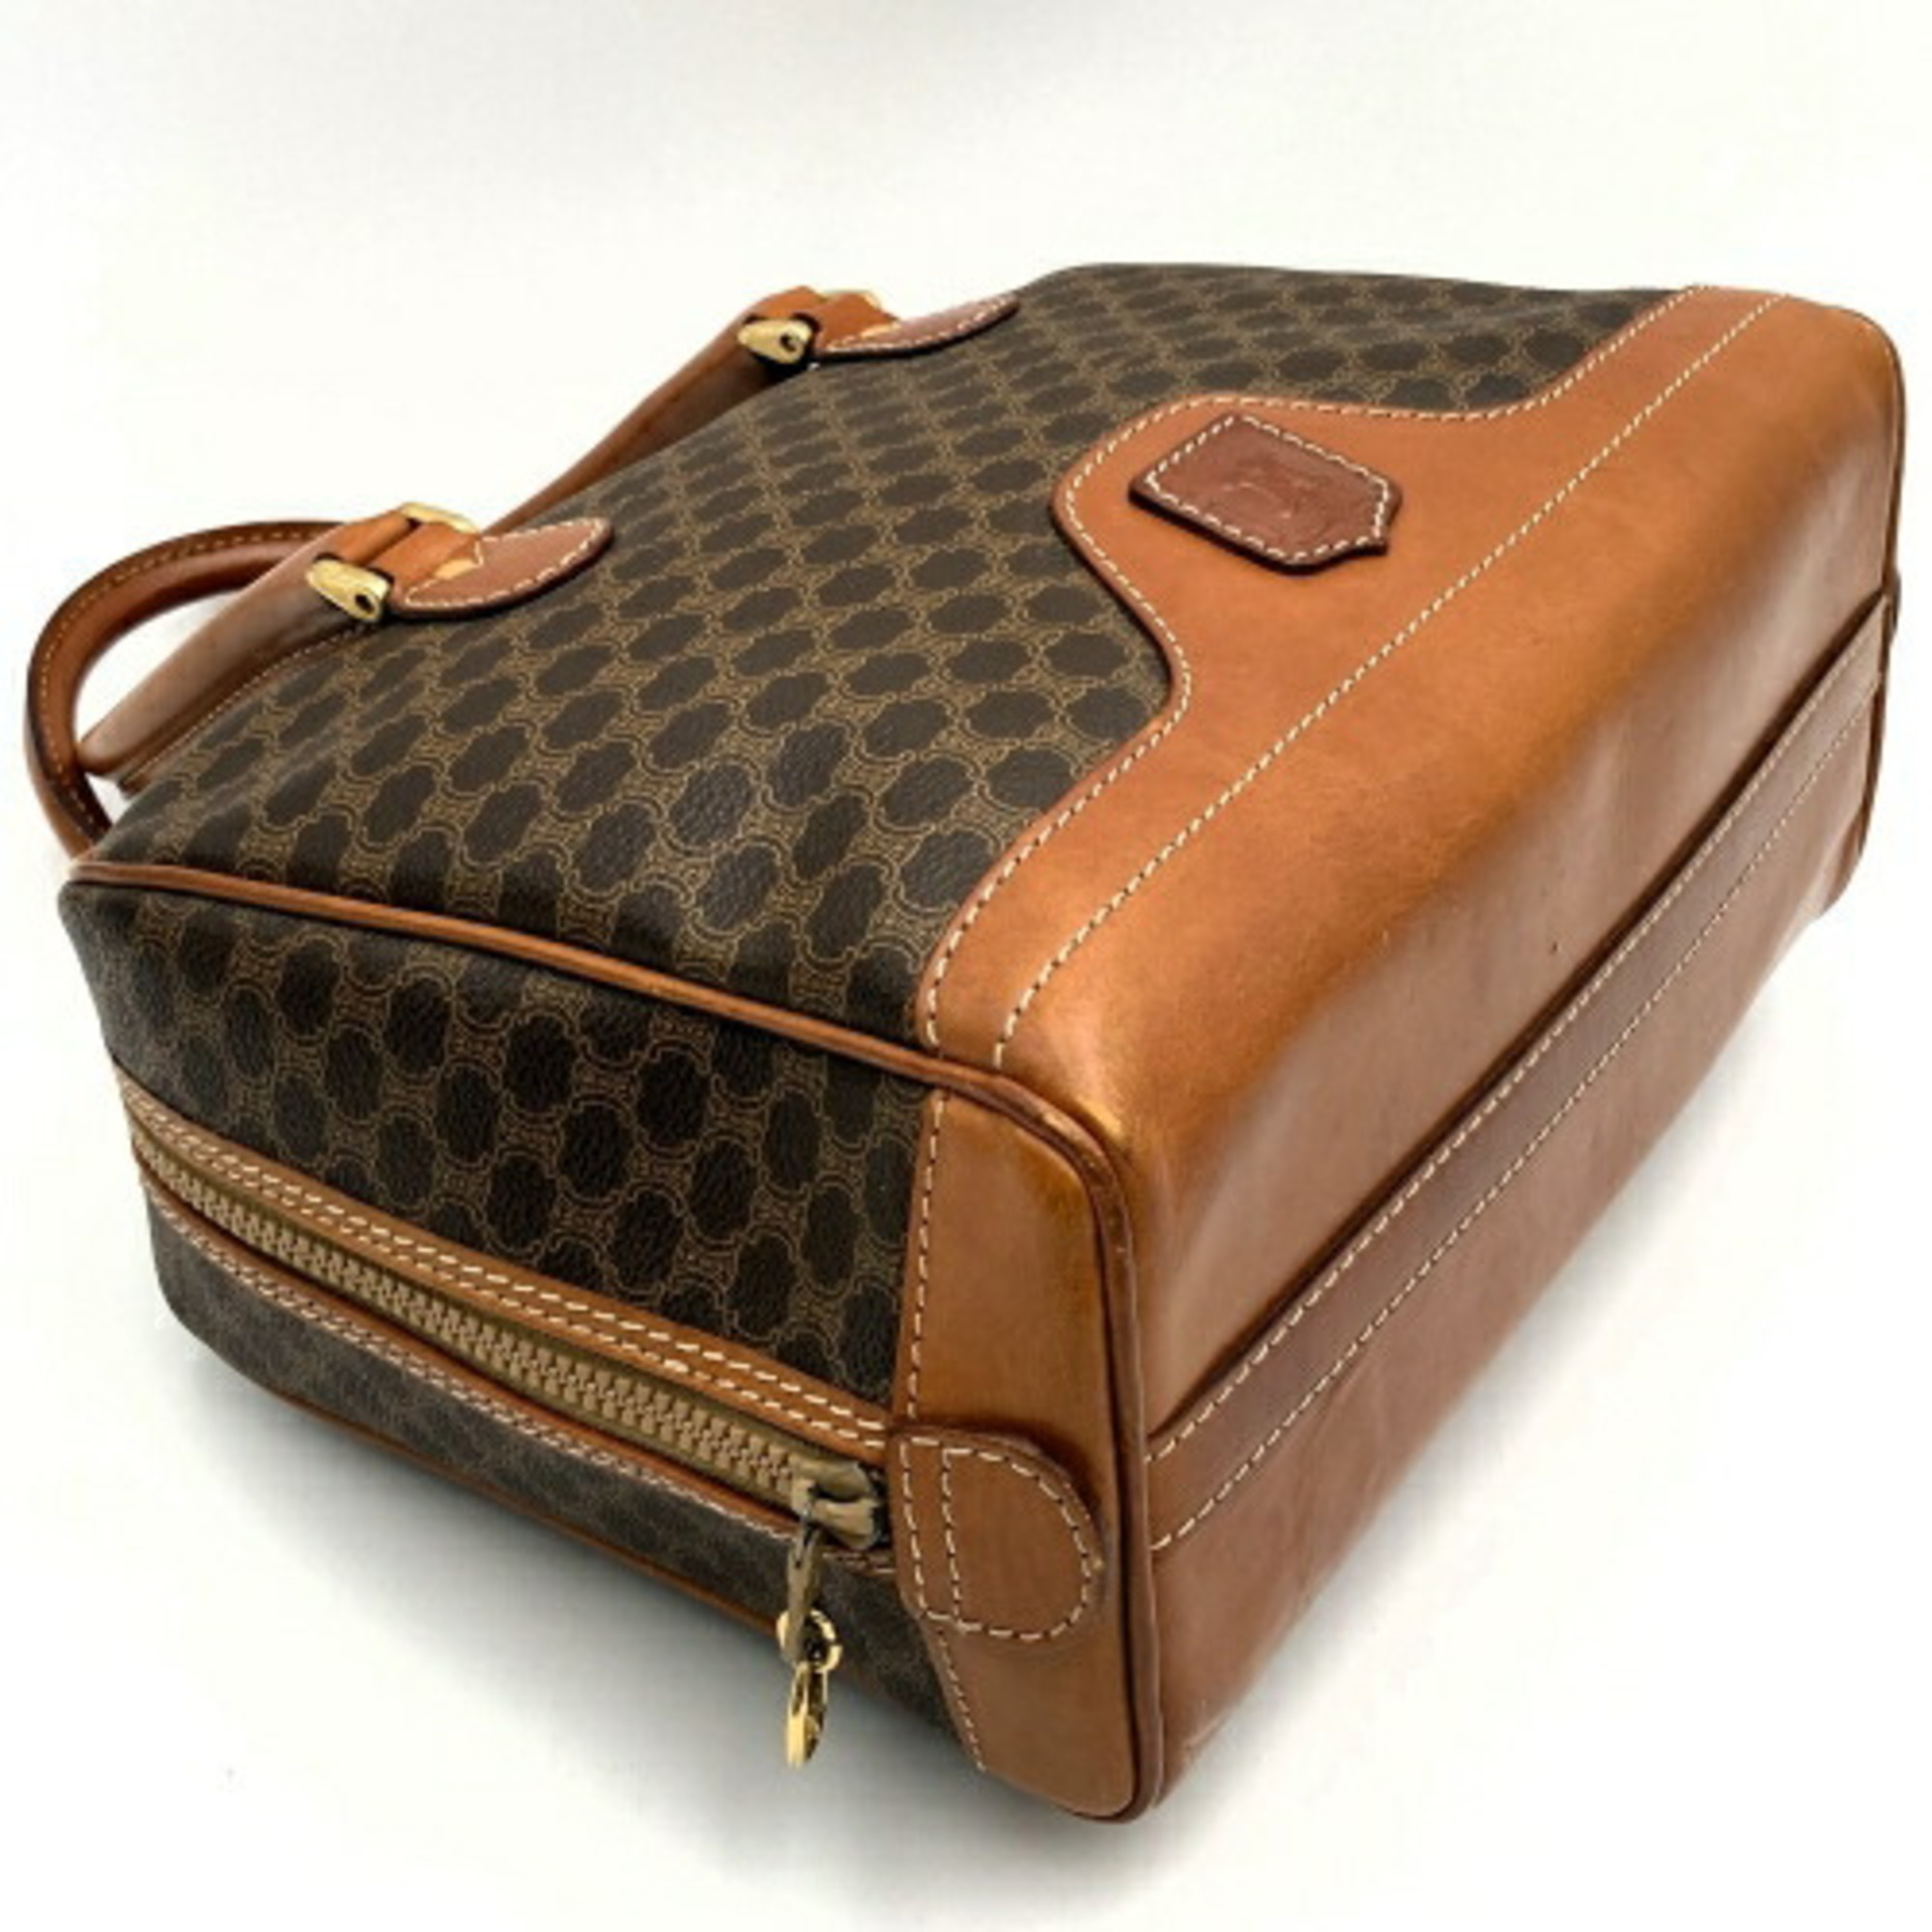 Celine Handbag Macadam Pattern Brown Women's M07 Leather CELINE IT49PA3YE76S